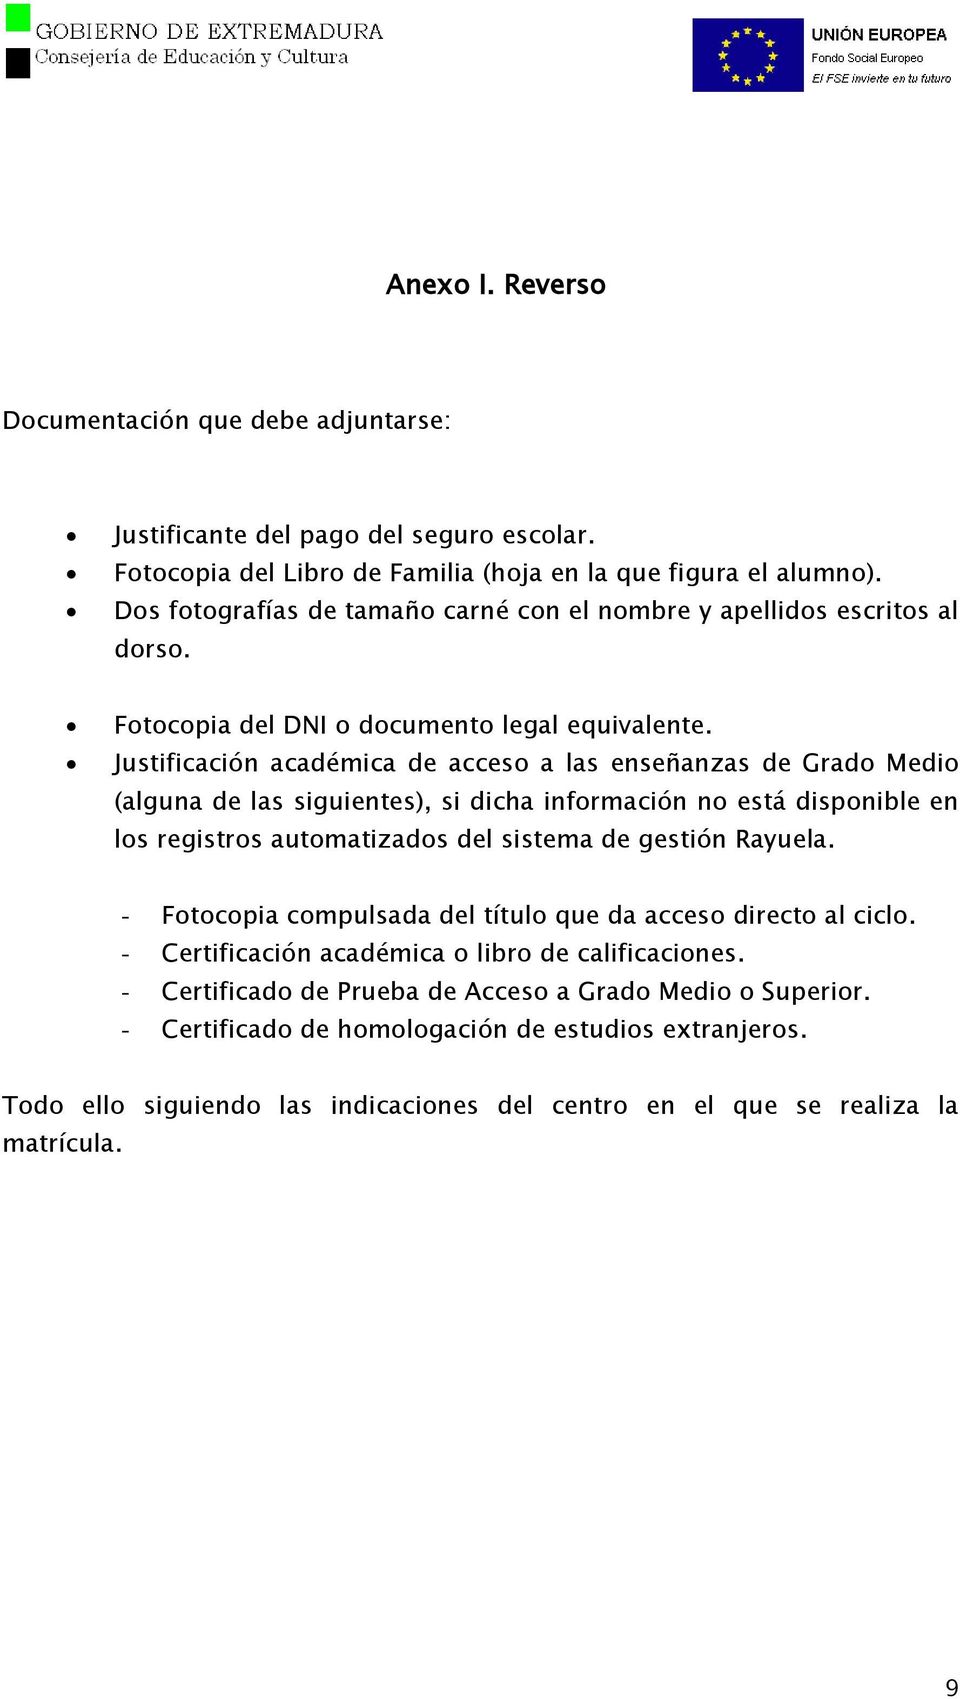 Justificación académica de acceso a las enseñanzas de Grado Medio (alguna de las siguientes), si dicha información no está disponible en los registros automatizados del sistema de gestión Rayuela.